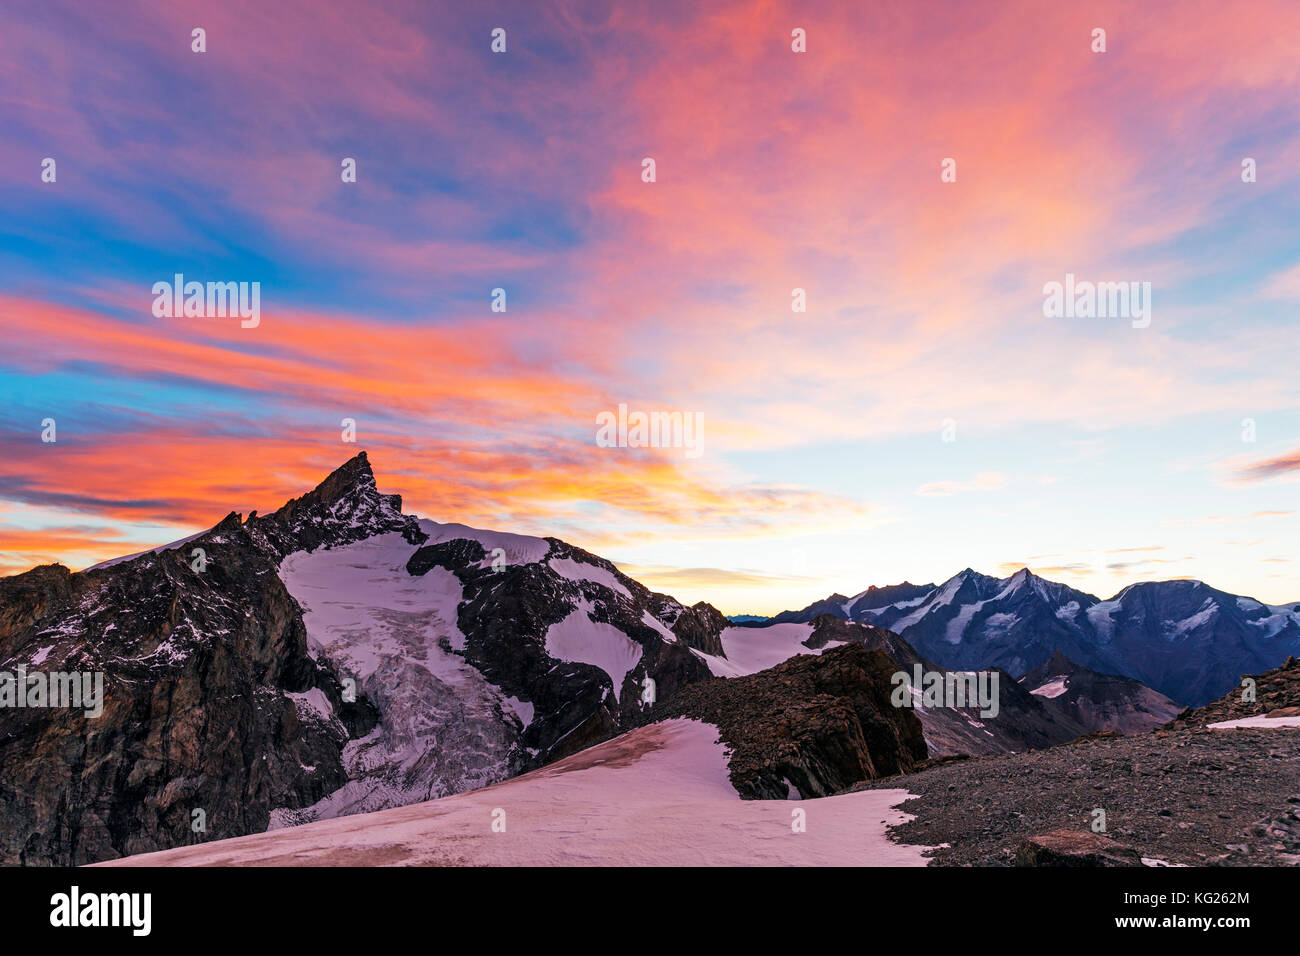 Sonnenaufgang Blick auf zinalrothorn, 4421 m, von Ober Gabelhorn, 4063 m, Zermatt, Wallis, Schweizer Alpen, Schweiz, Europa Stockfoto